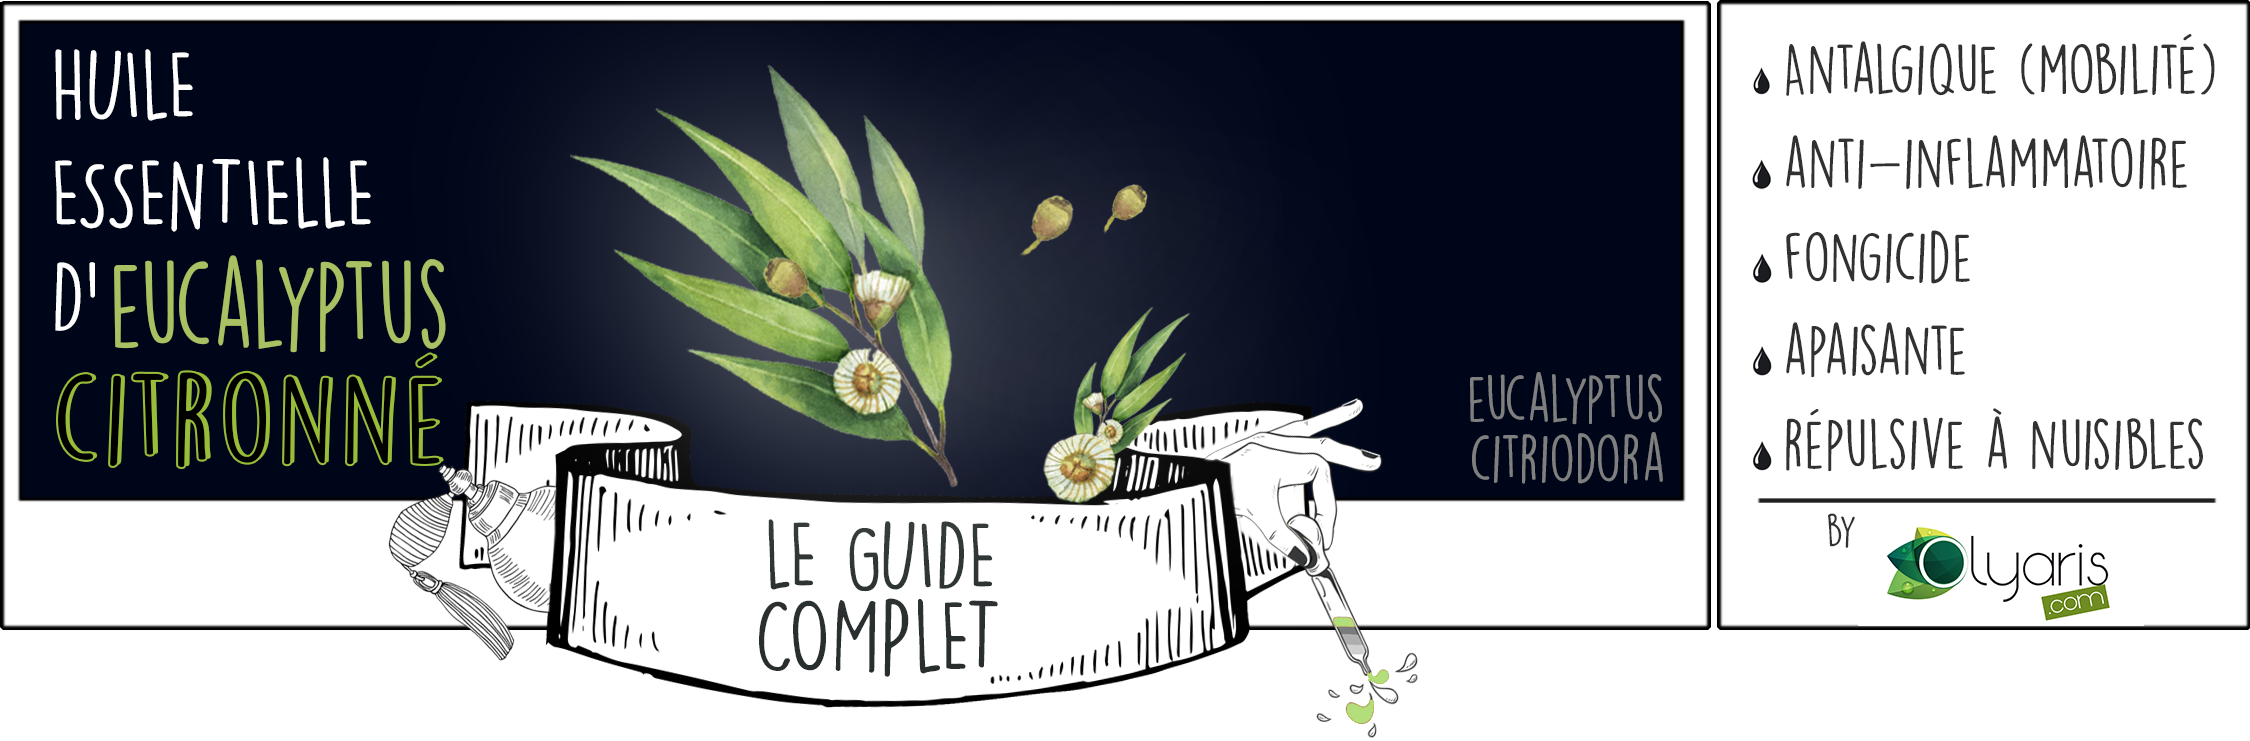 Huile Essentielle d'Eucalyptus Citronné: le Guide Complet - Olyaris